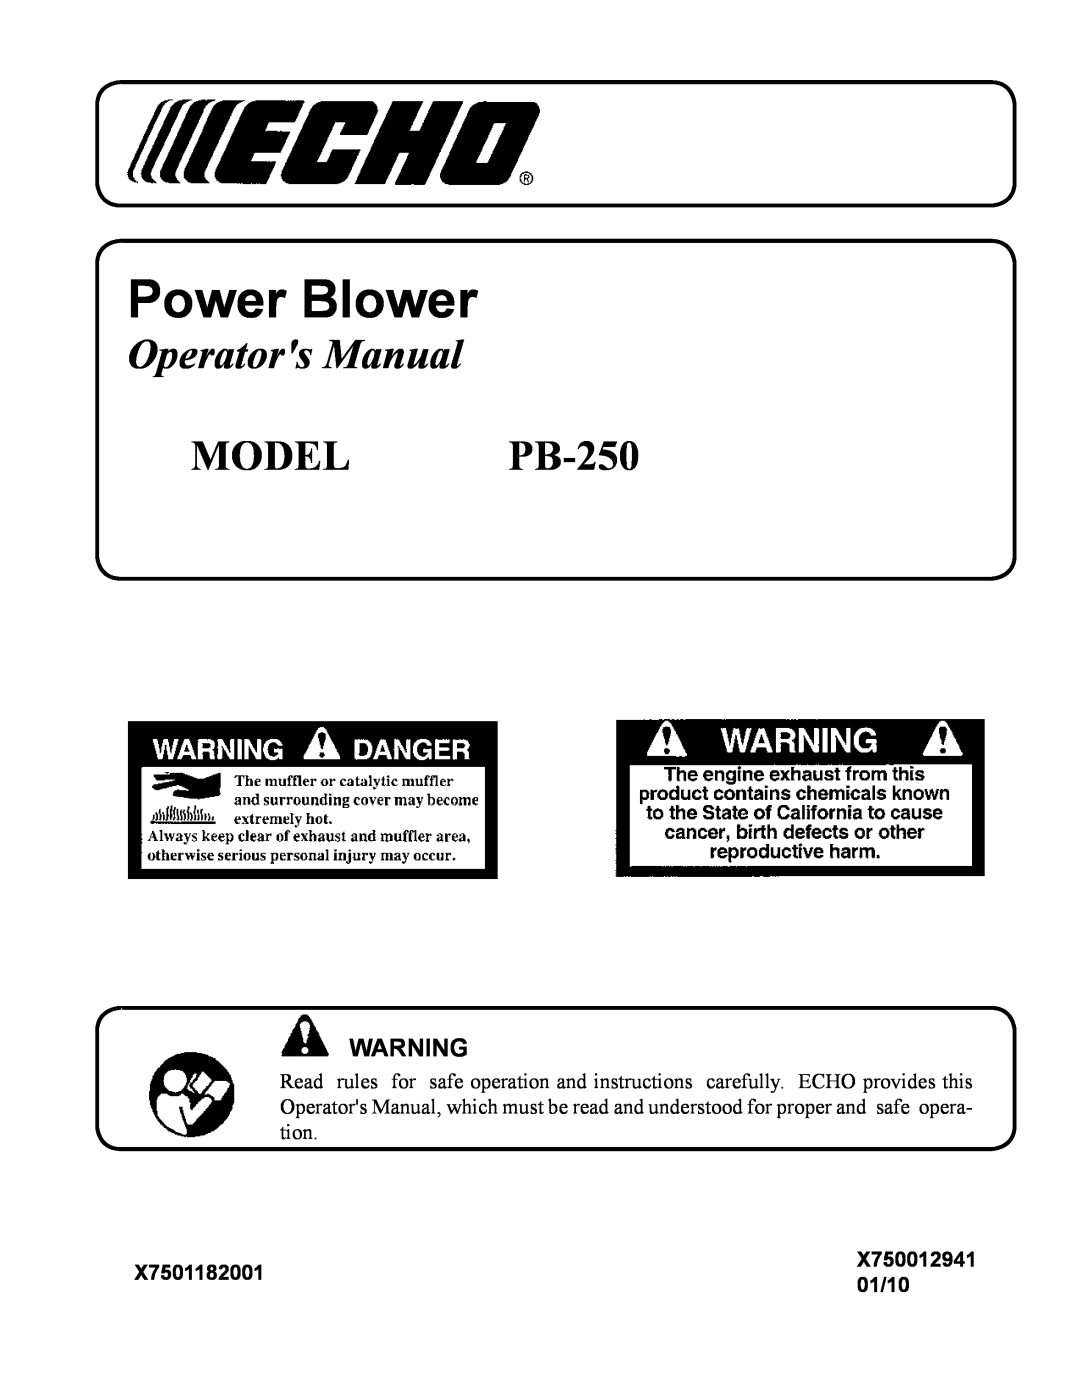 Echo manual X7501182001, 01/10, Power Blower, Operators Manual, MODEL PB-250, X750012941 